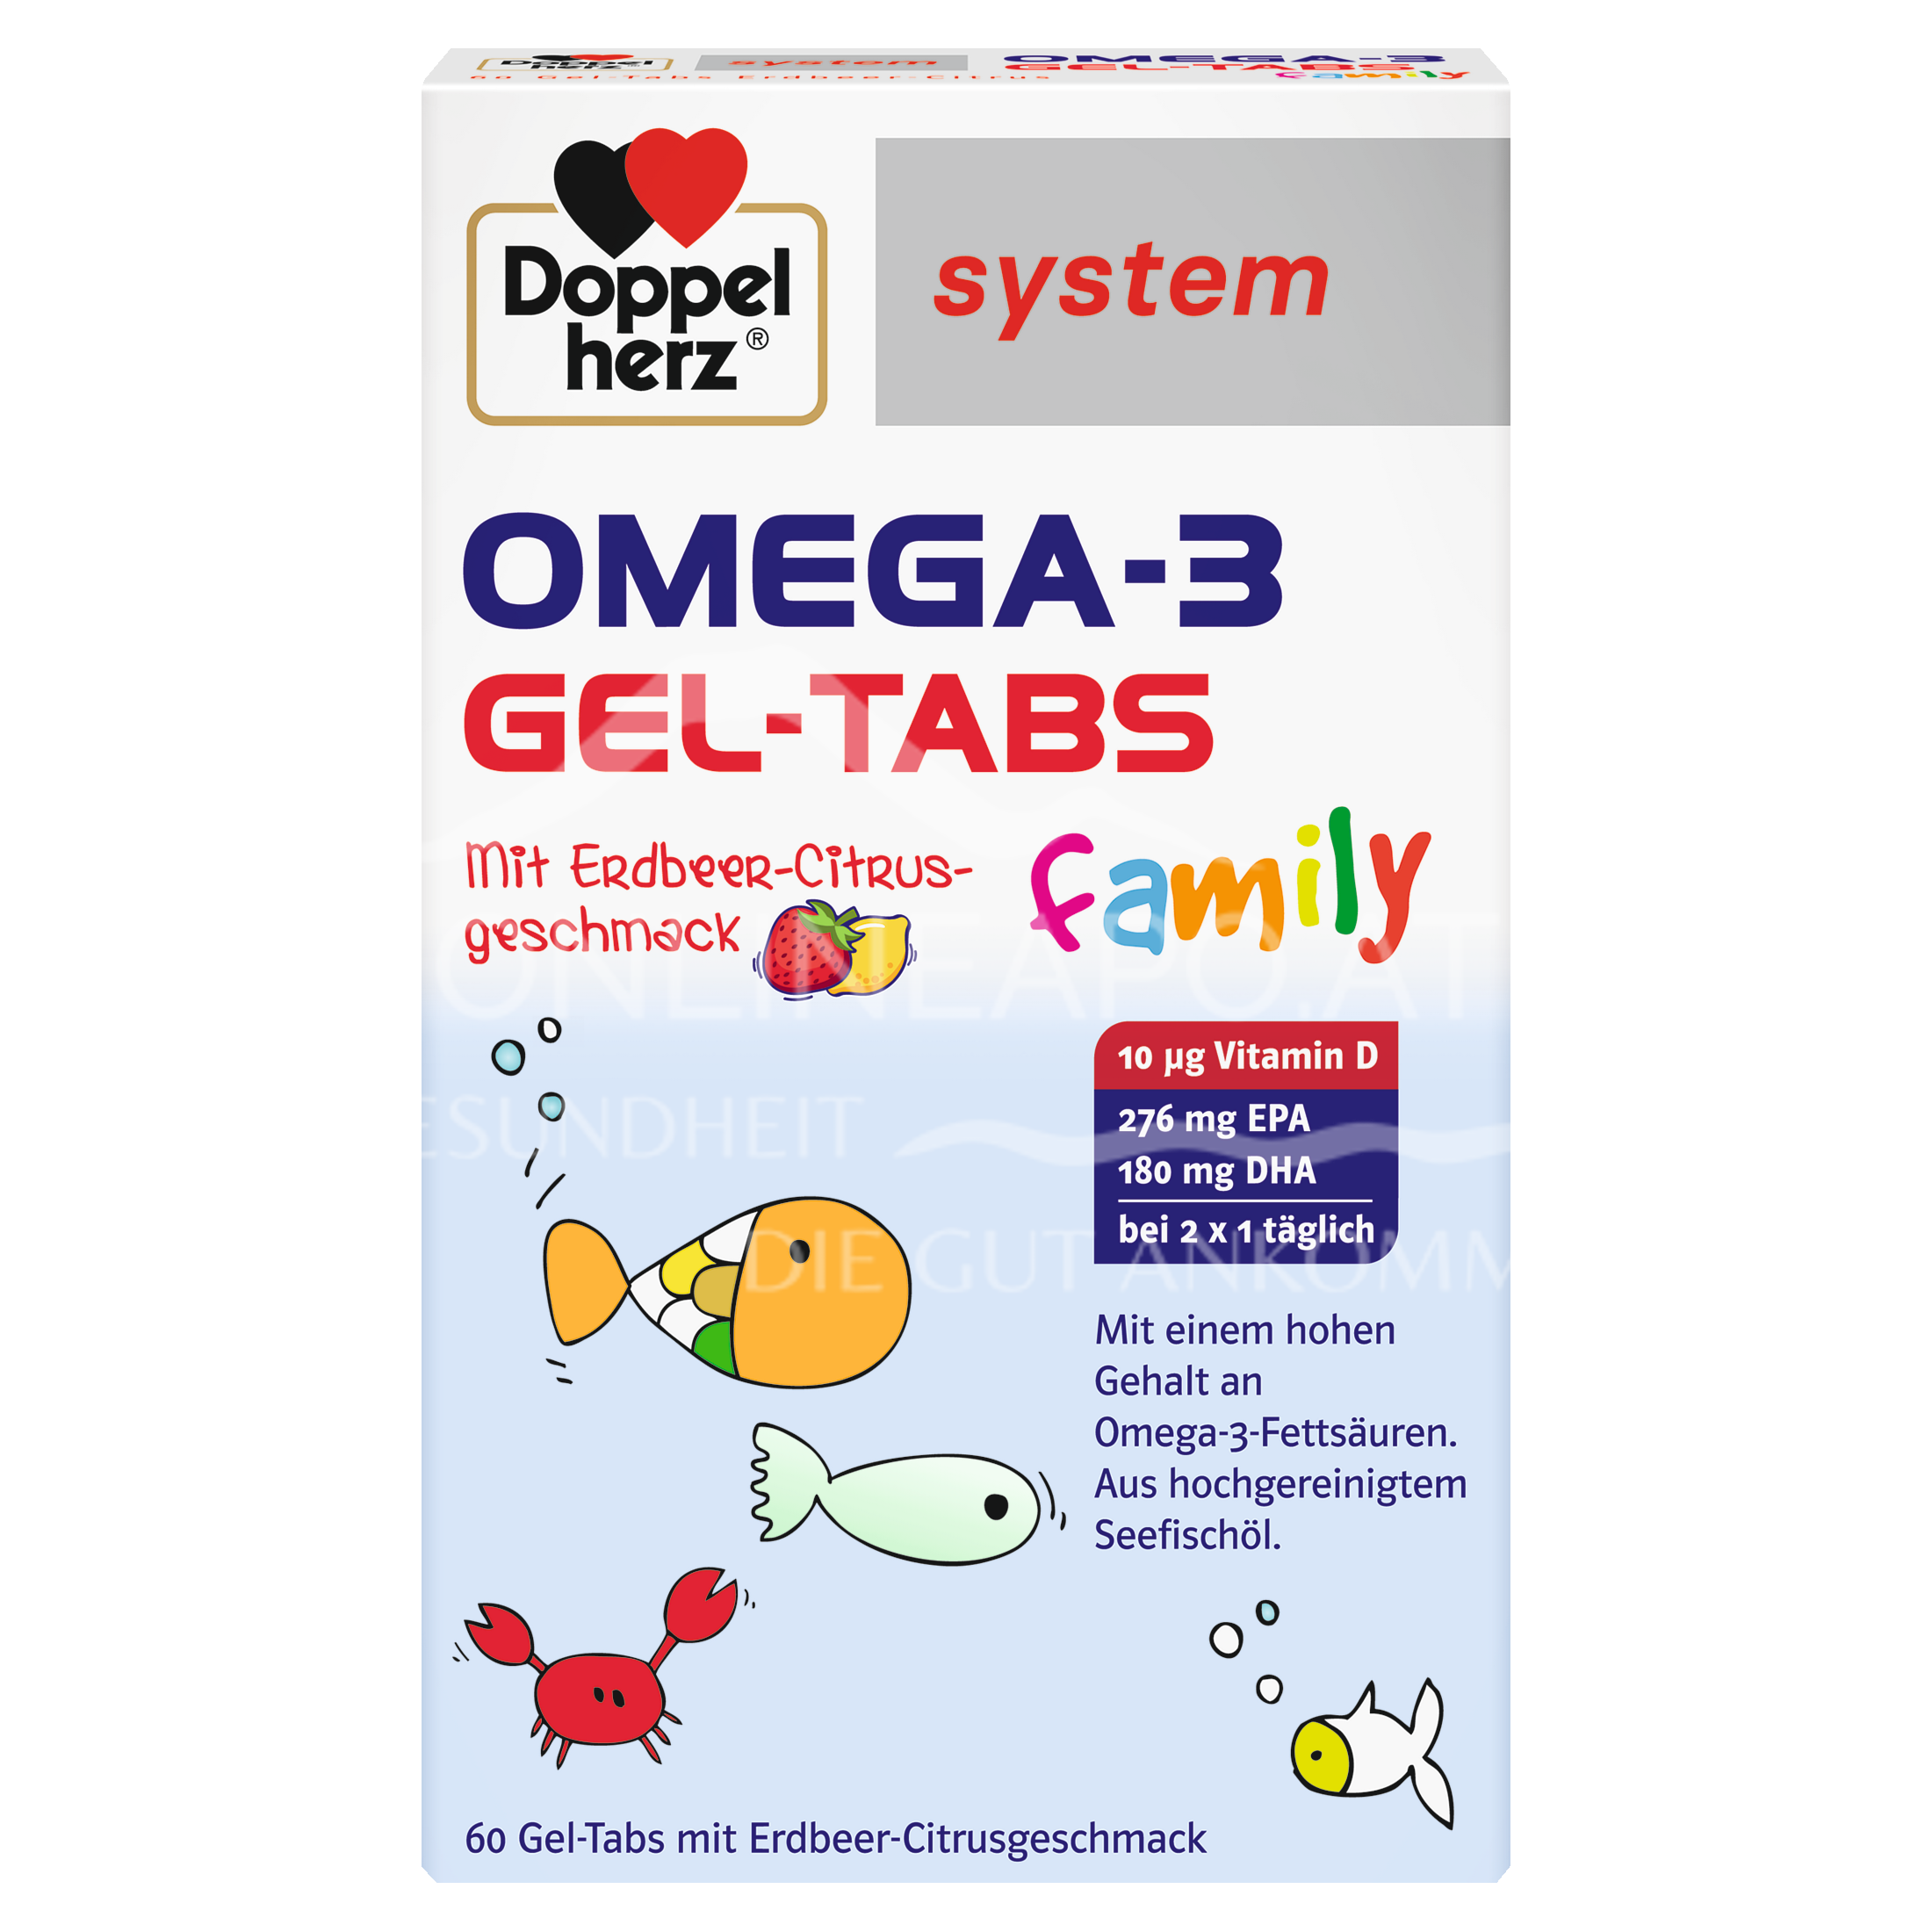 Doppelherz system OMEGA-3 family Gel-Tabs Erdbeer-Citrus